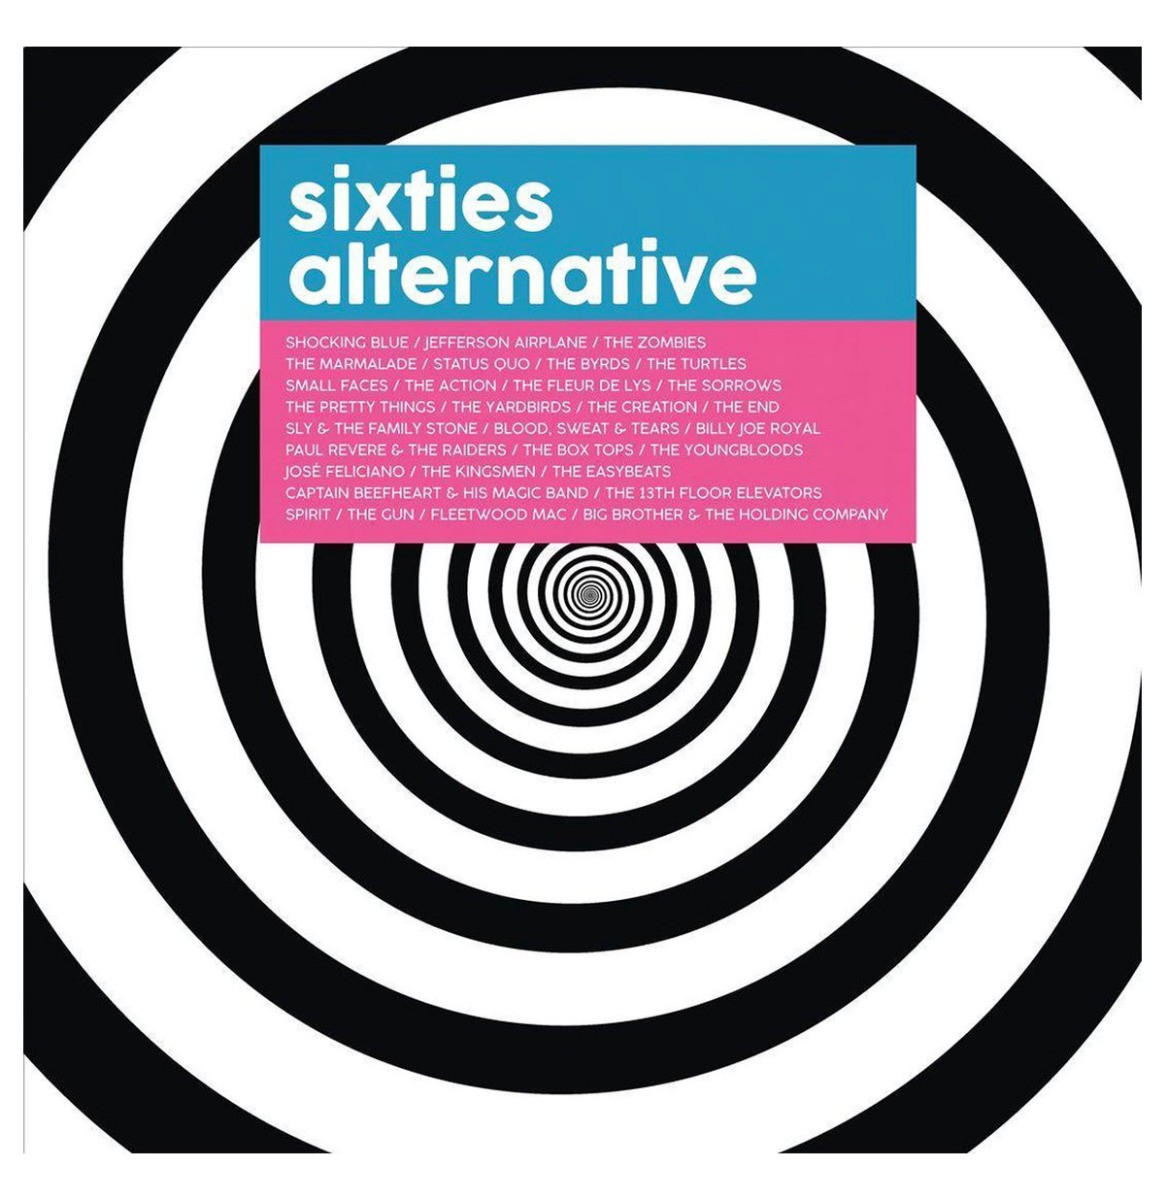 Alternative Sixties - Various Artists 2 LP